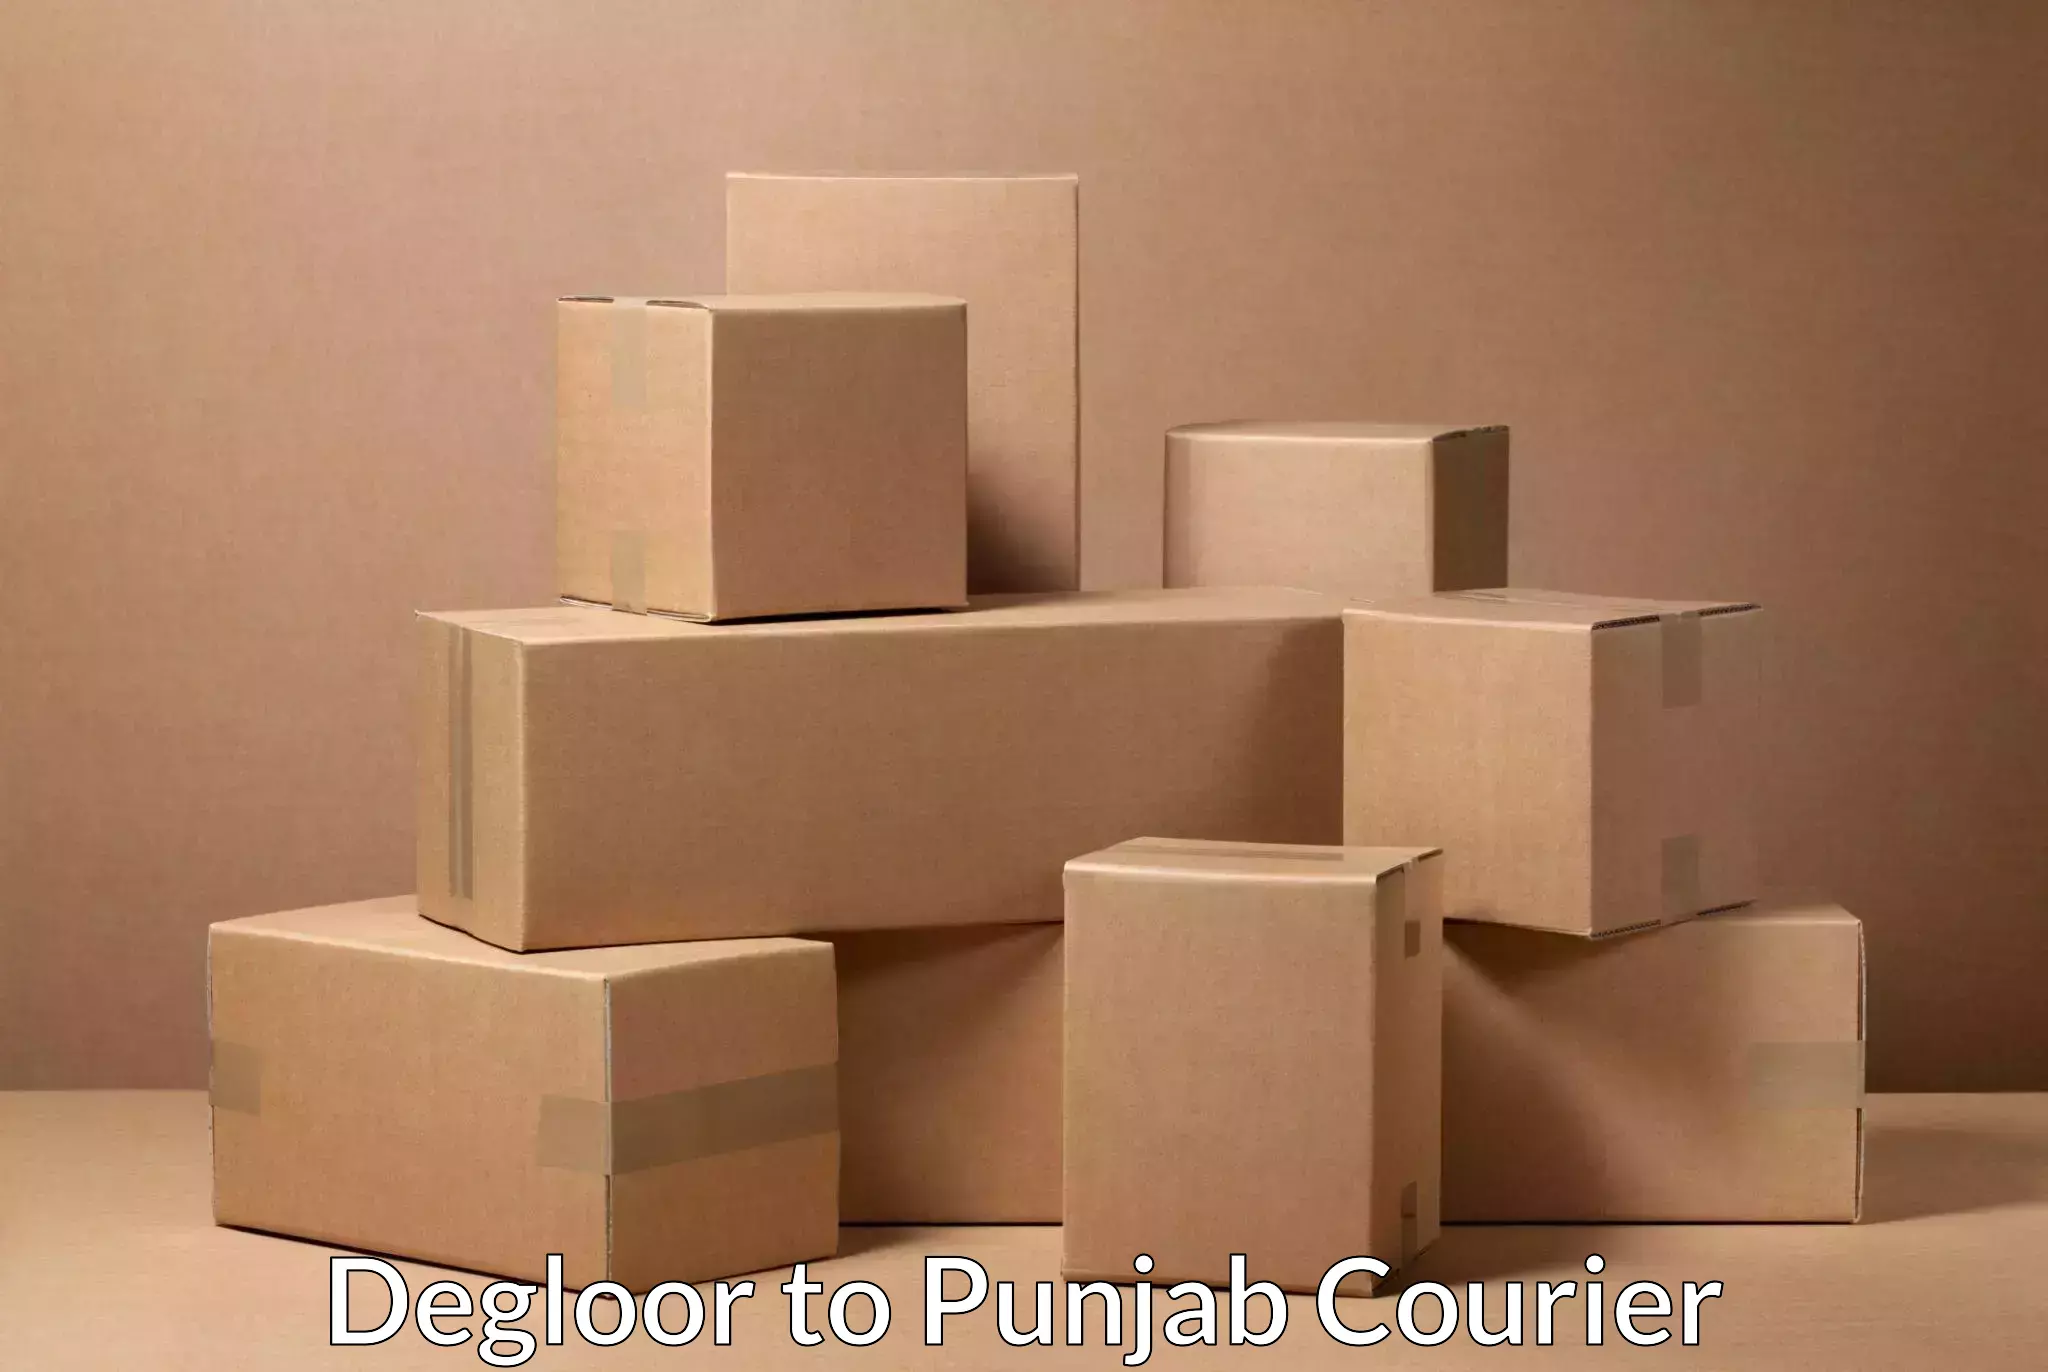 Bulk courier orders Degloor to Zirakpur